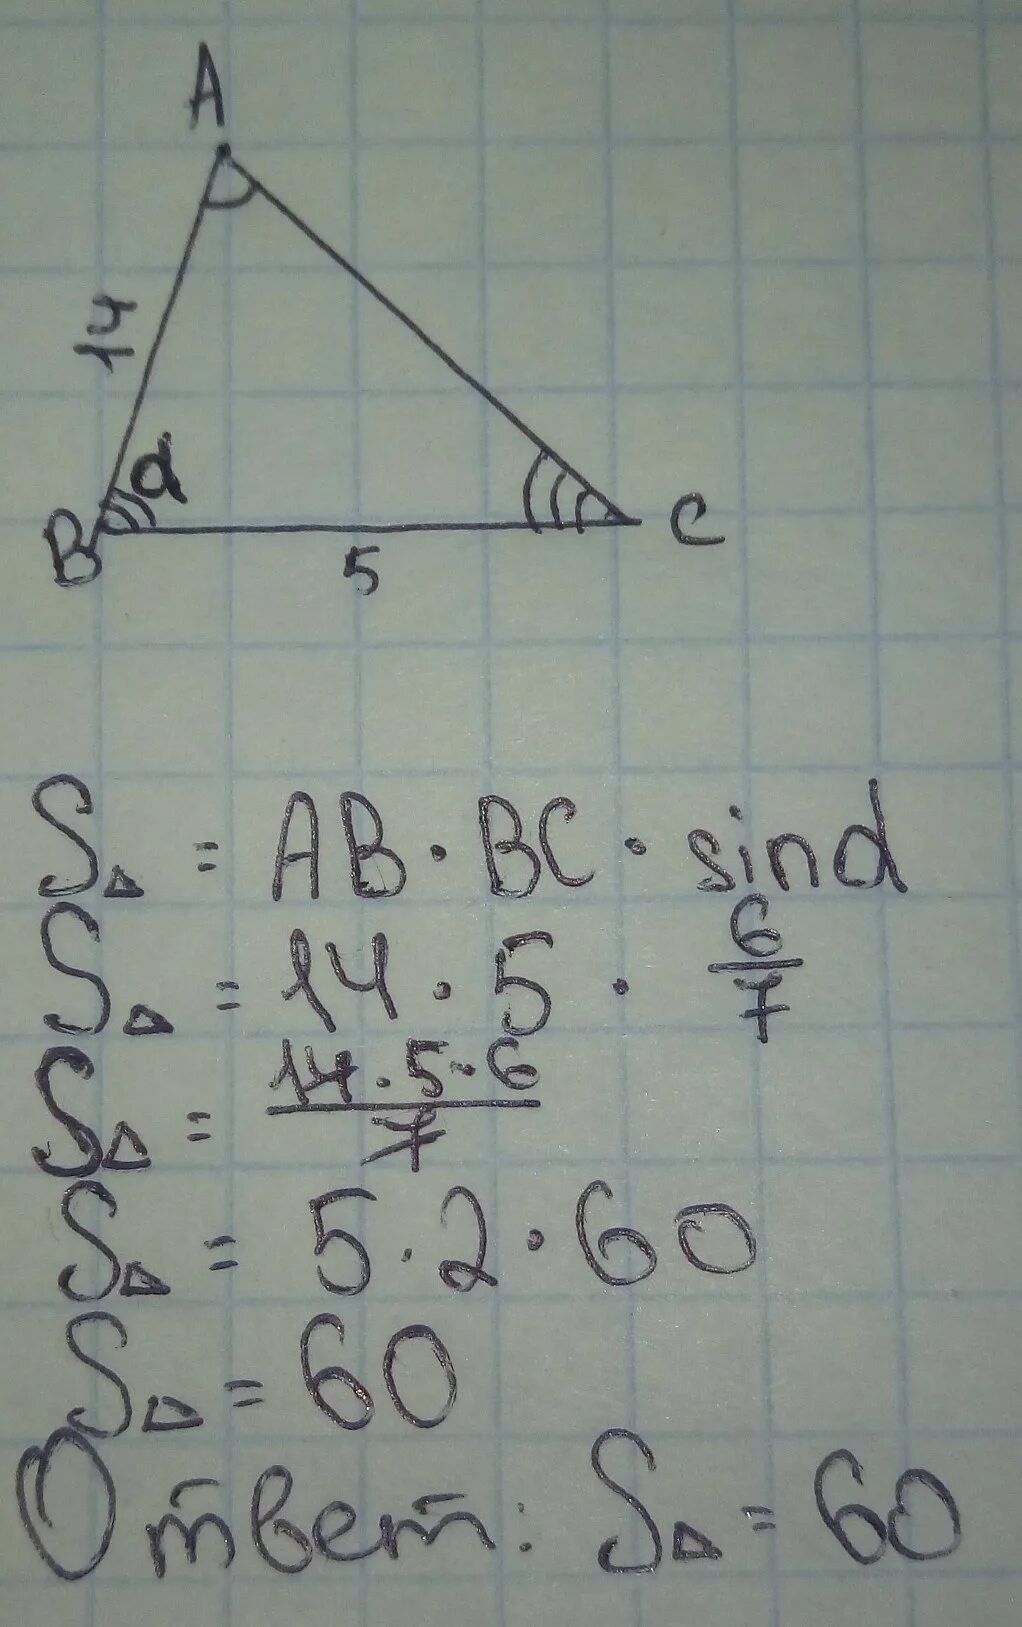 Ab 36 sin a 5 6. В треугольнике АБС аб 14 БС 5 синус угла АБС 6\7. В треугольнике АВС аб 9 БС 14. Ab 14 BC 5 sin ABC 6/7. Площадь треугольника АВС.